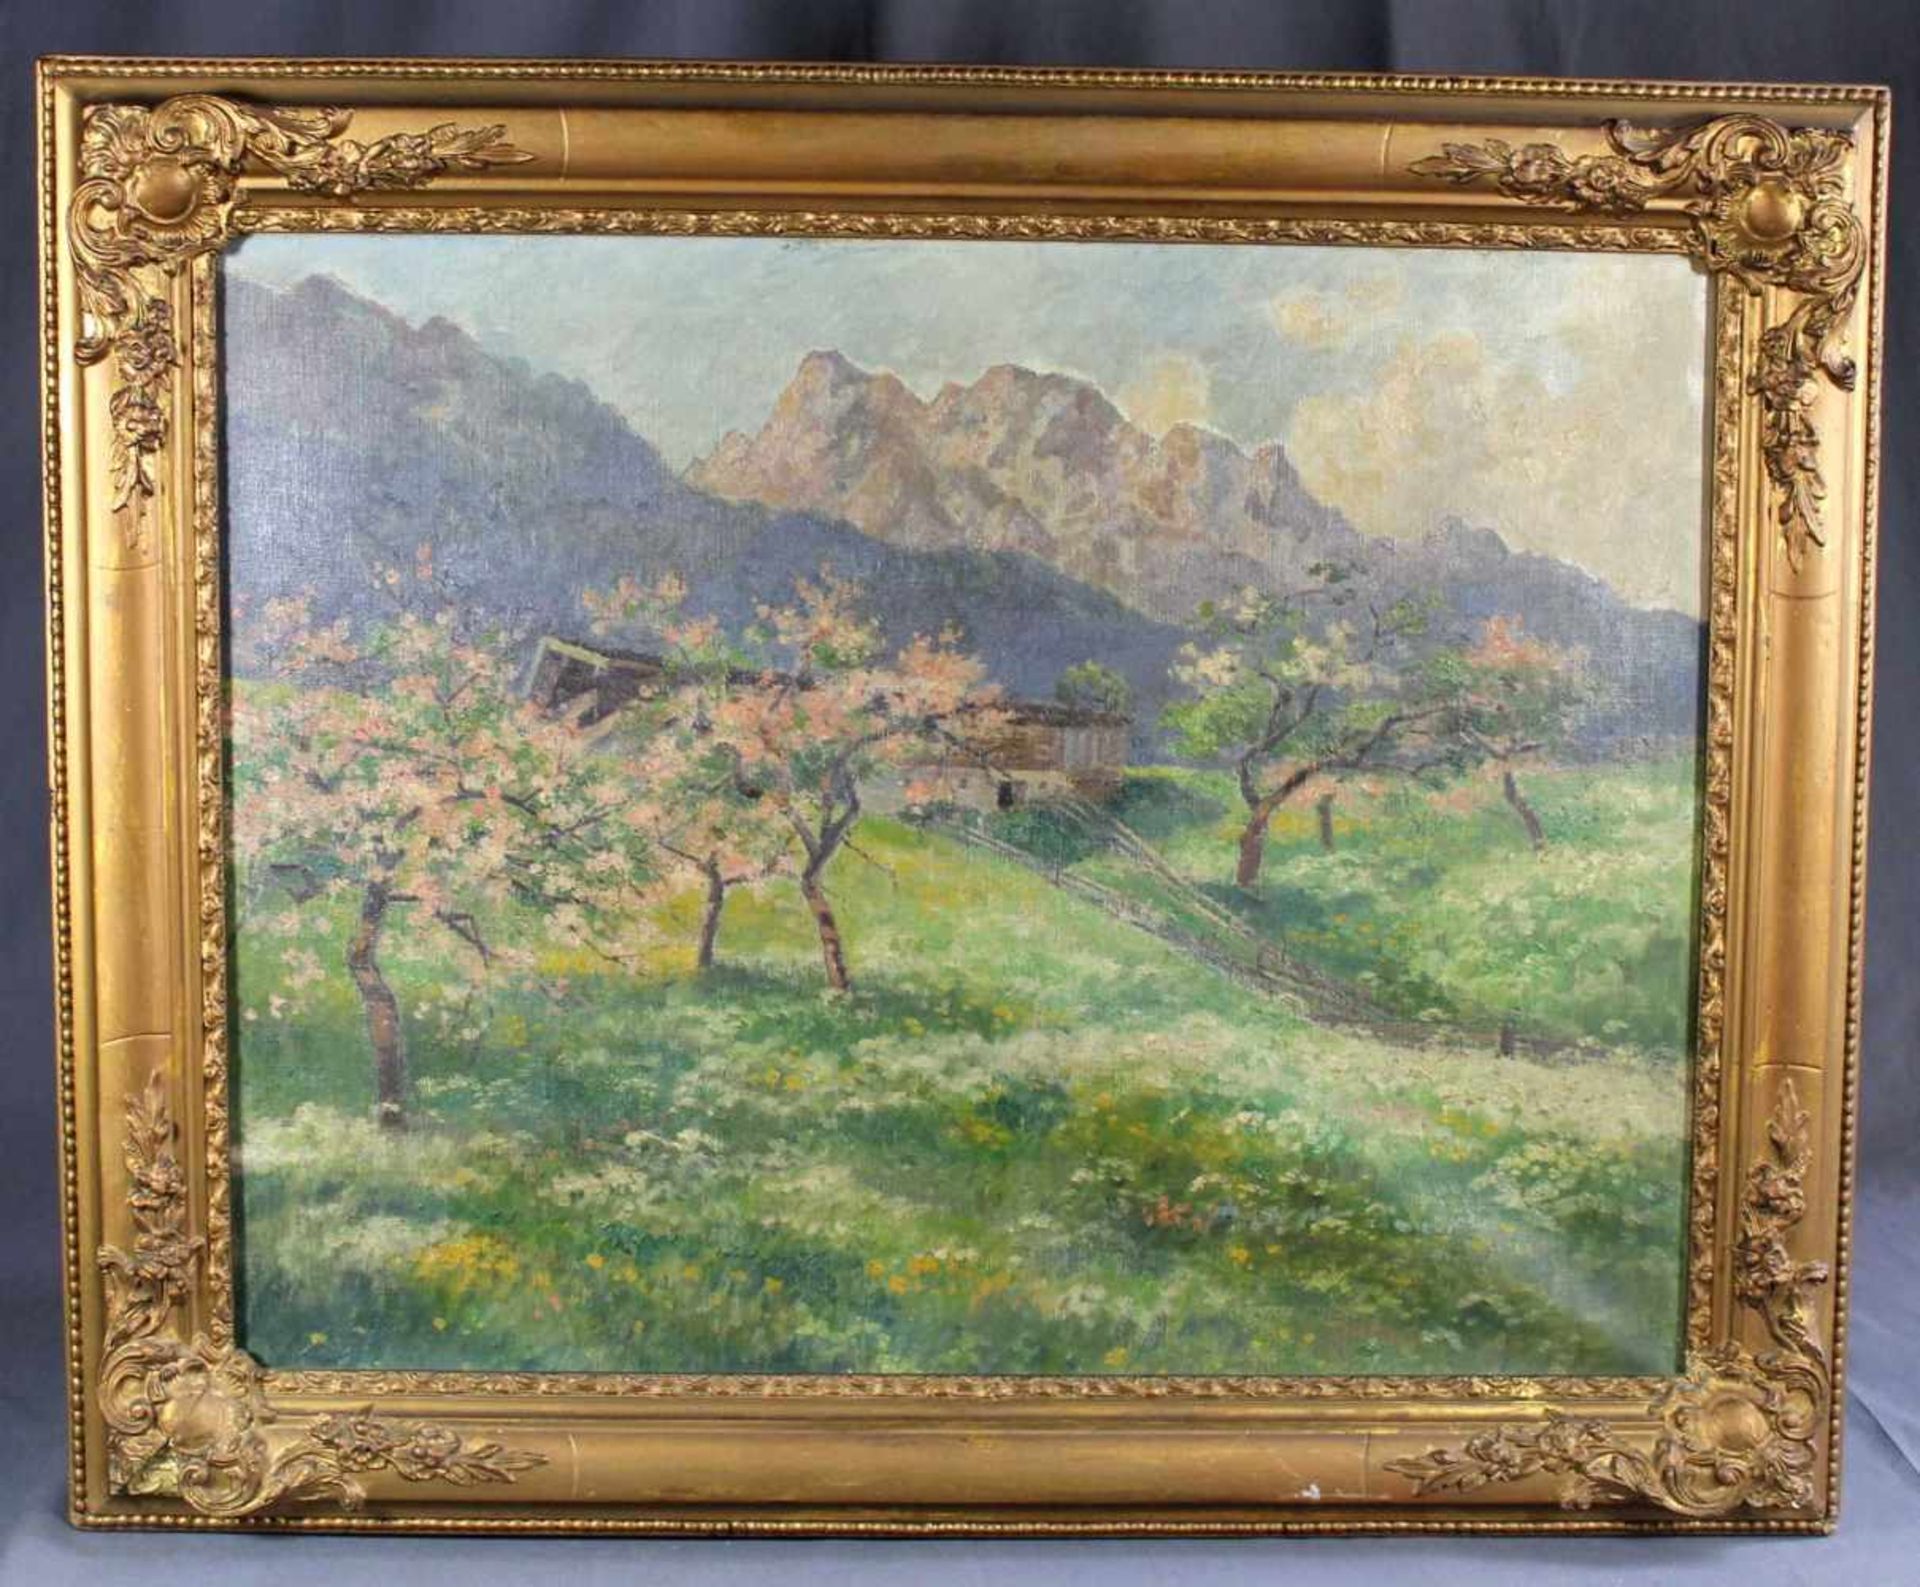 1 Ölbild auf Leinwand "Berglandschaft im Frühling", keine Signatur erkennbar, Leinwand muss neu